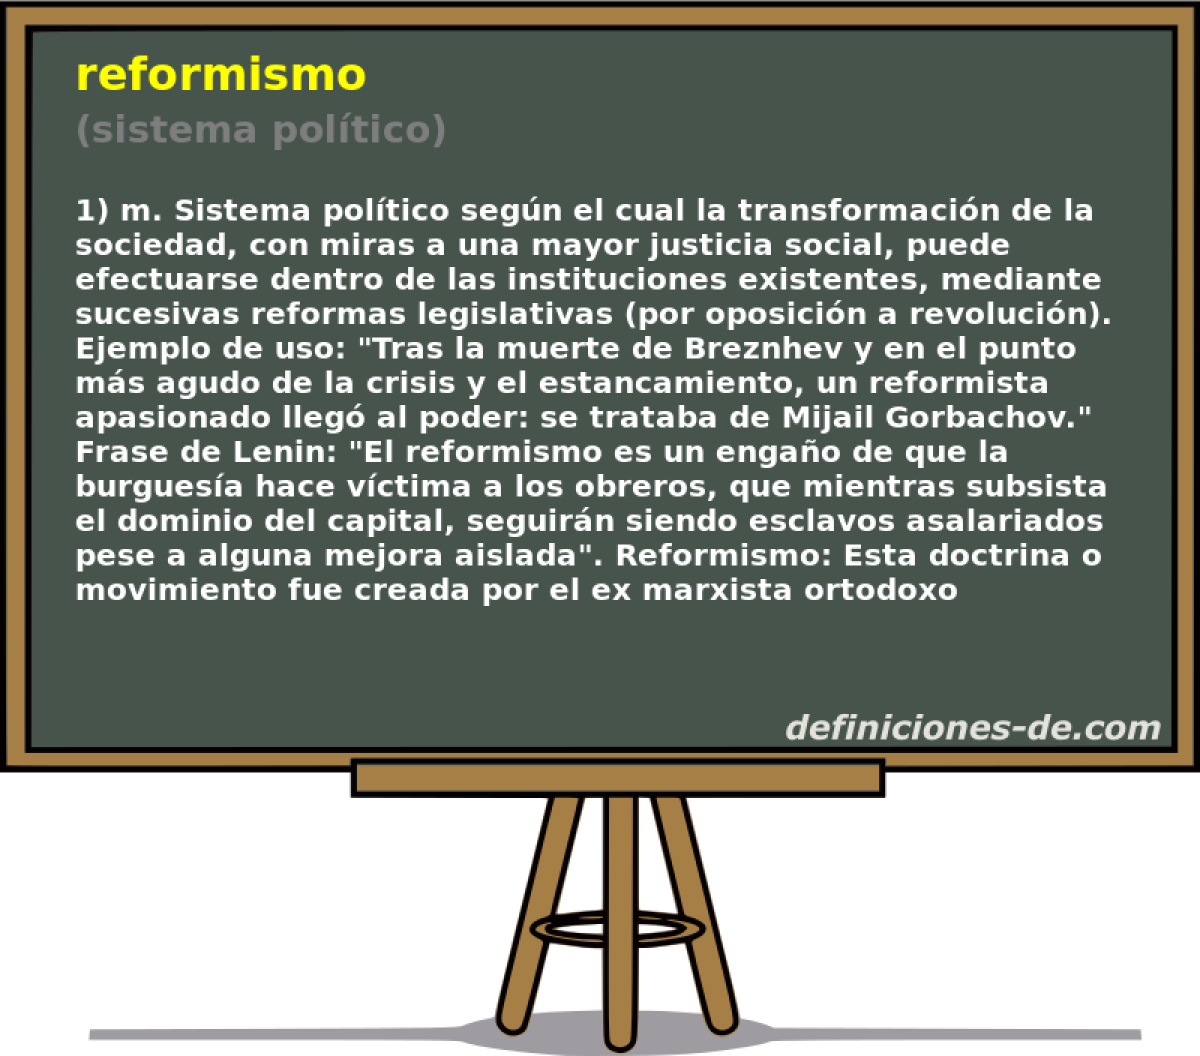 reformismo (sistema poltico)